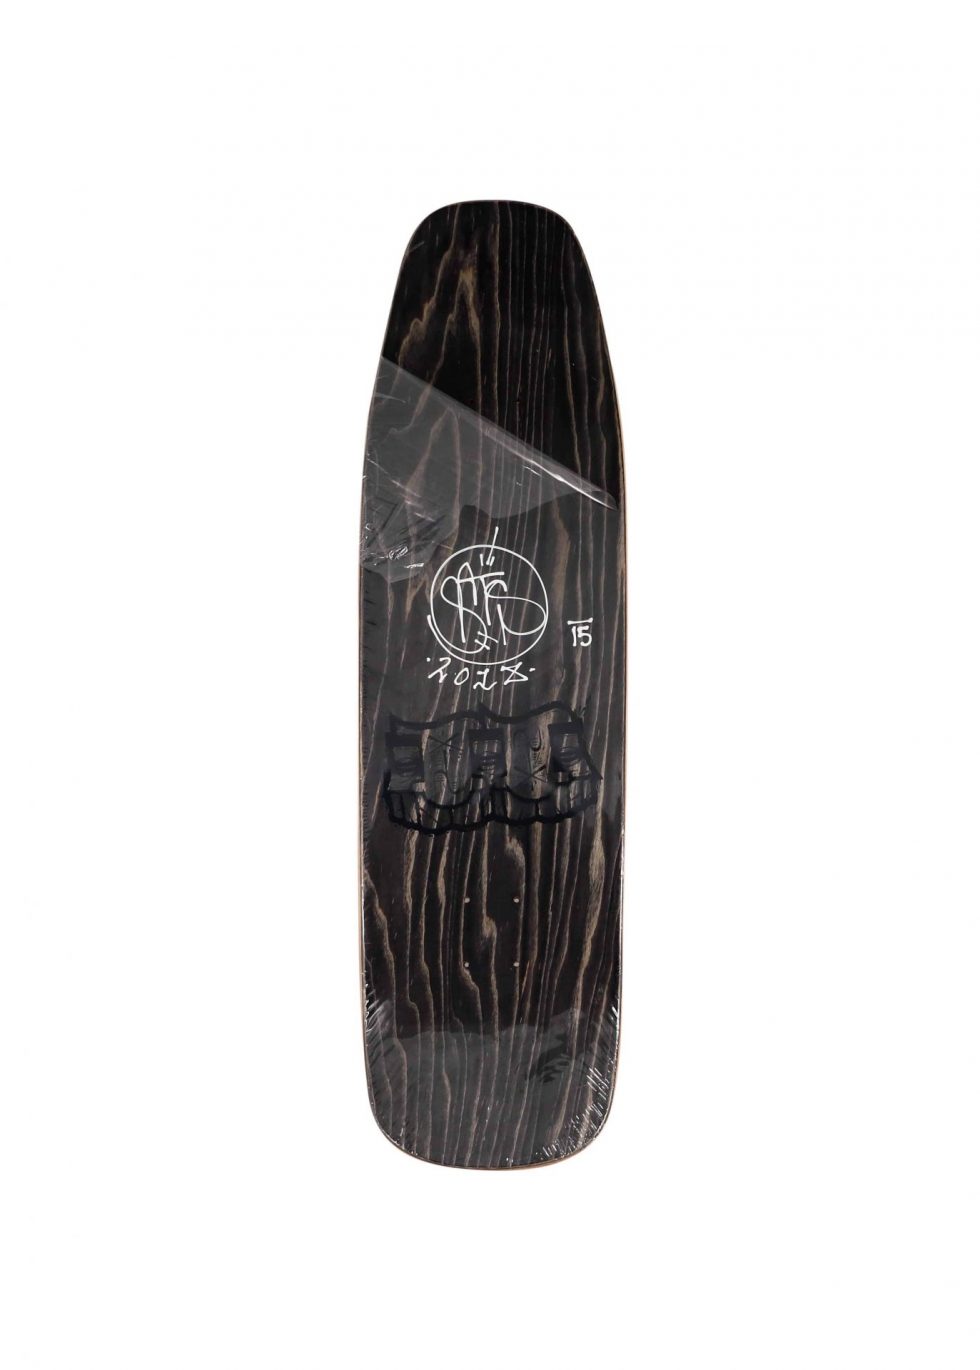 Lot #13945 – GATS Cruiser Gold Glitter Foil Skateboard Skate Deck Limited Edition GATS GATS Cruiser Skateboard